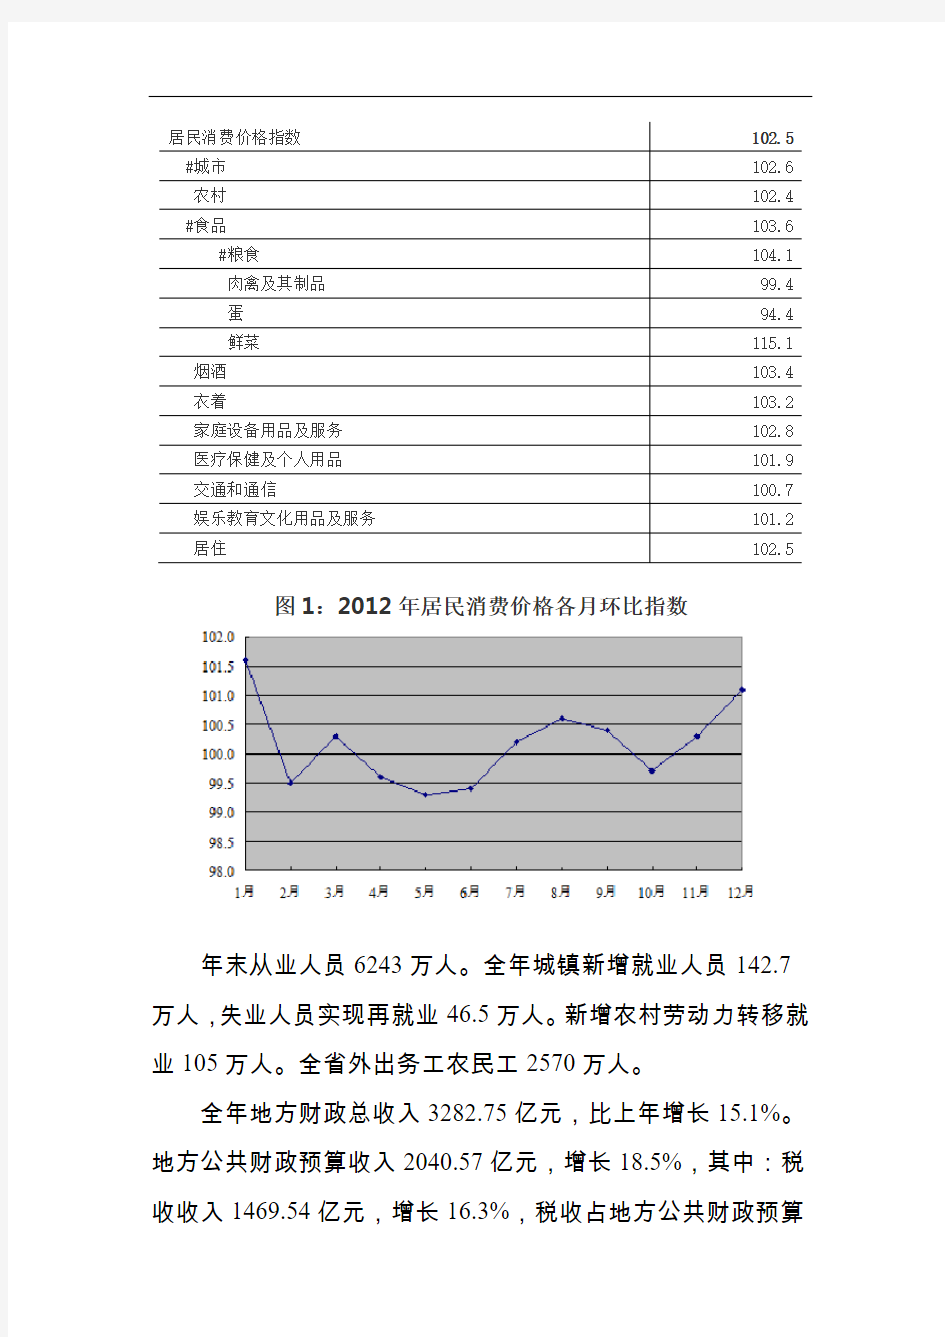 2012年河南省国民经济和社会发展统计公报